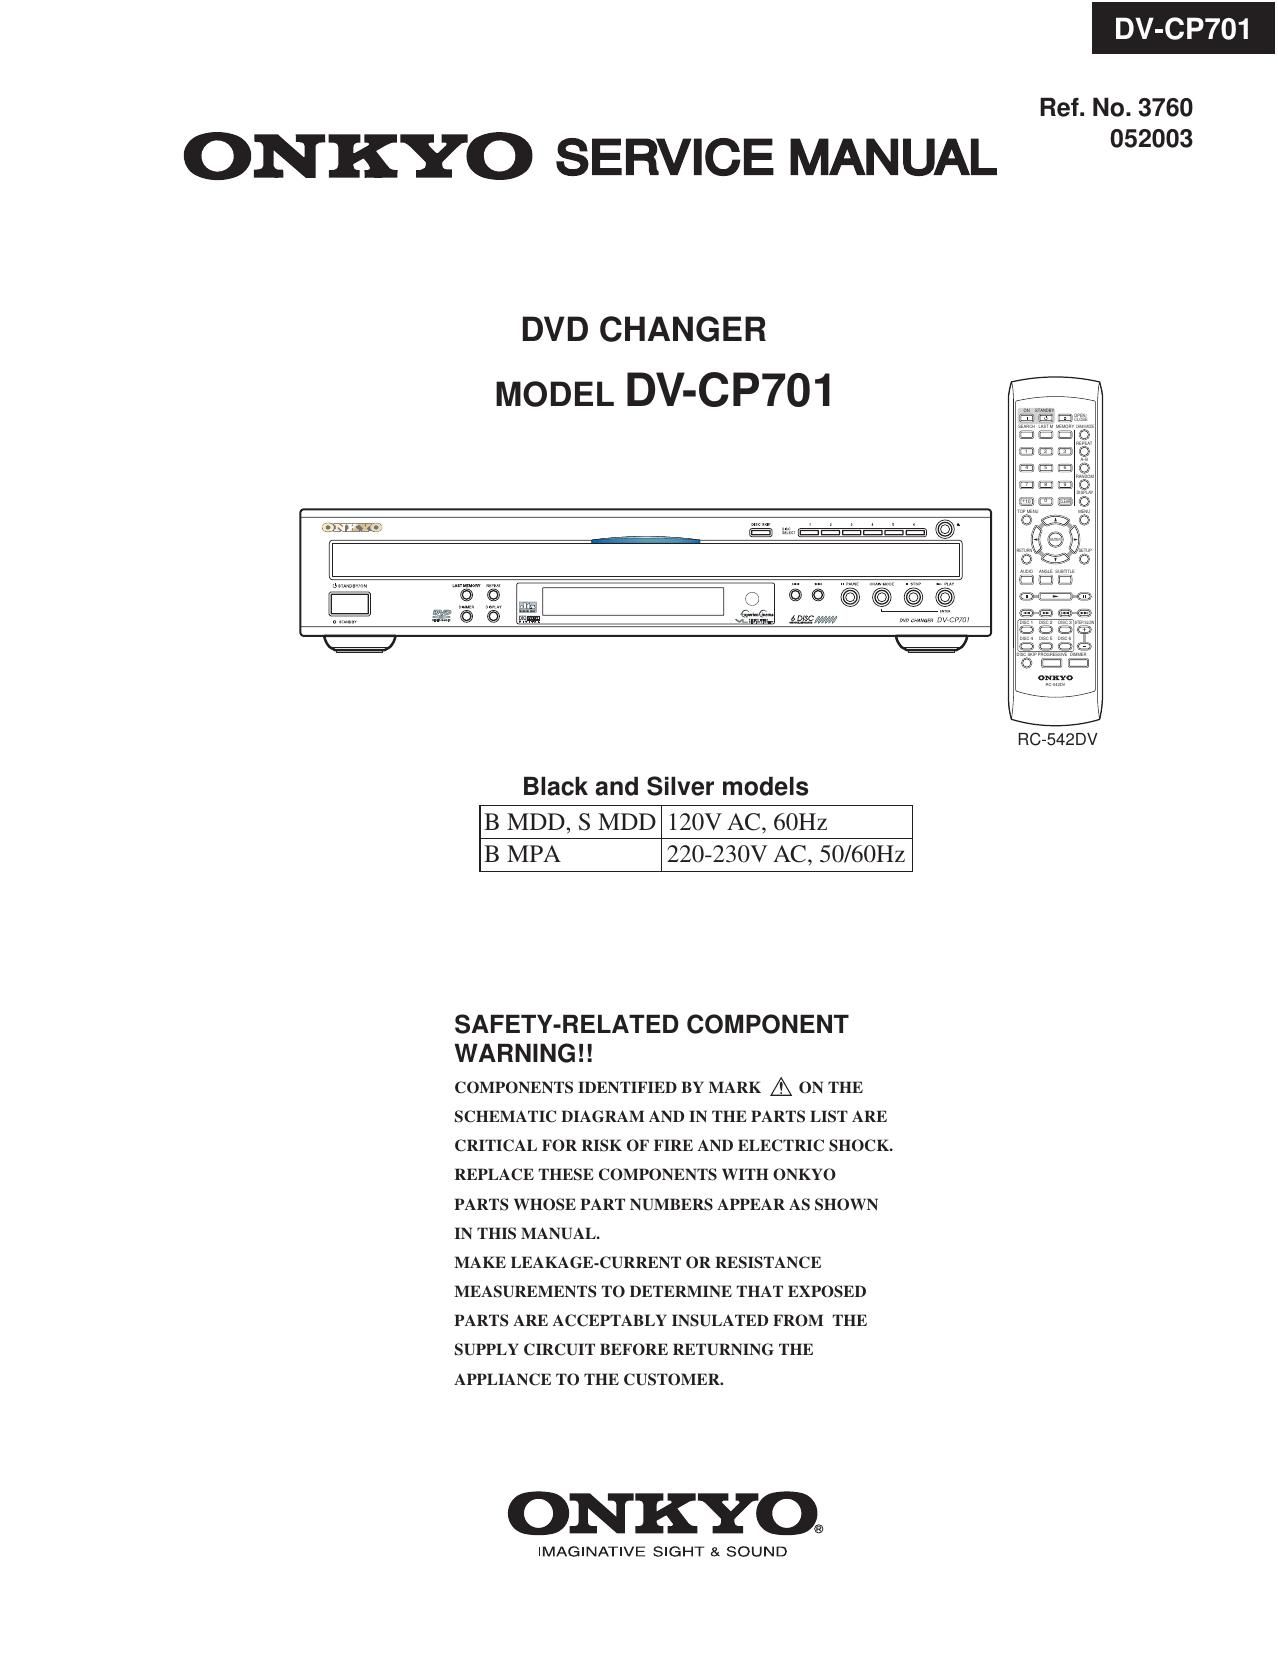 Onkyo DVCP 701 Service Manual